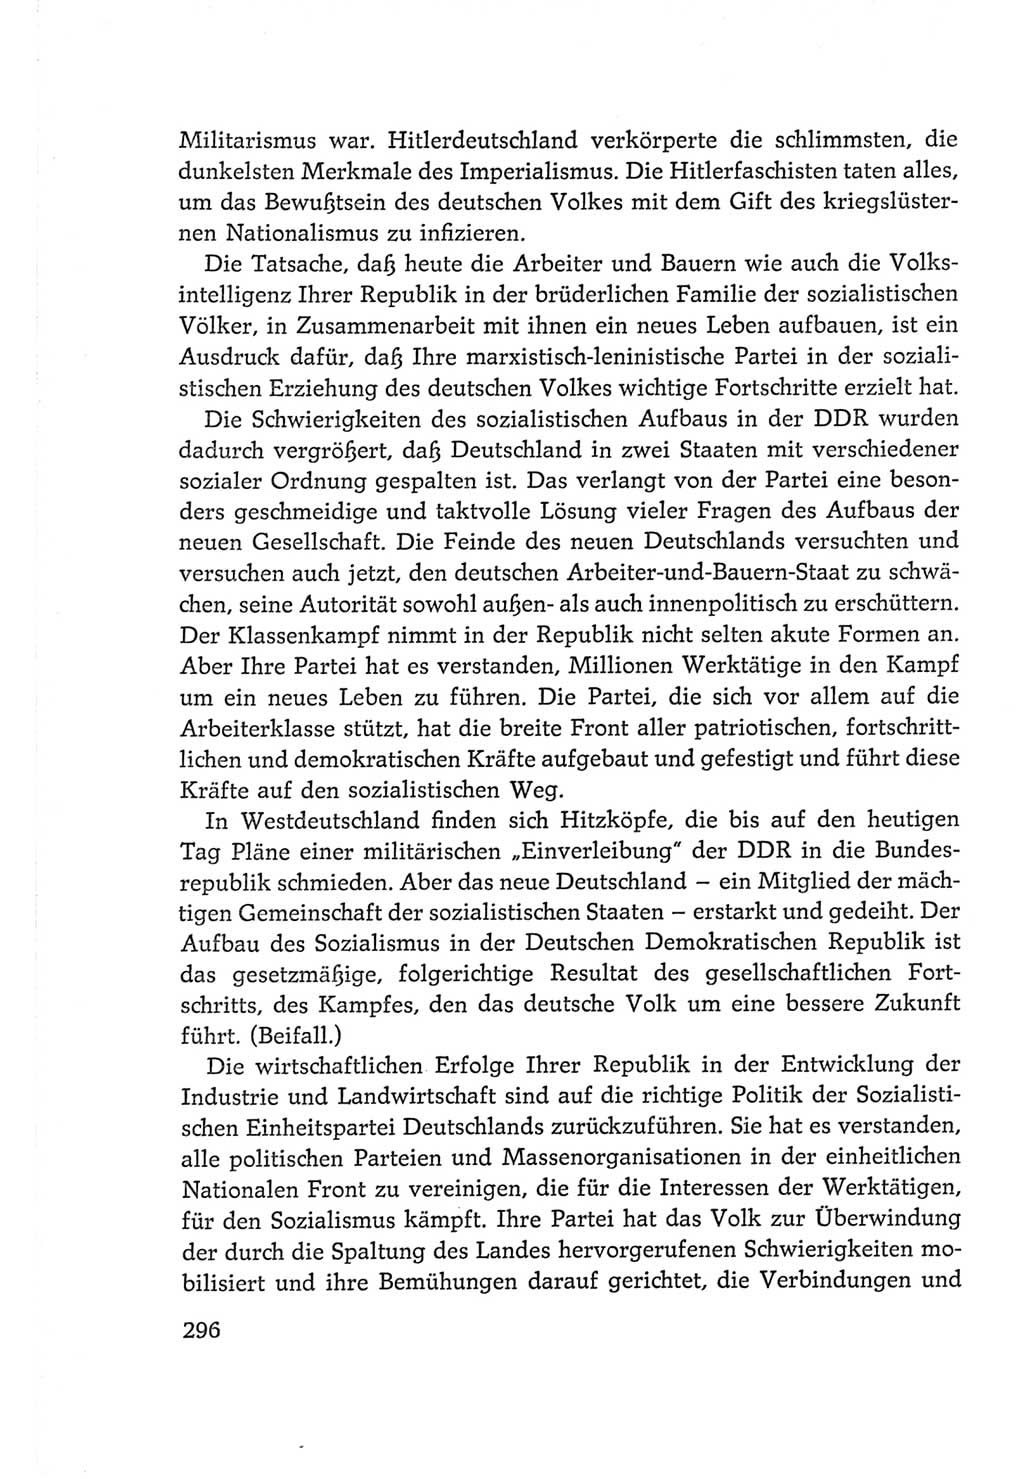 Protokoll der Verhandlungen des Ⅵ. Parteitages der Sozialistischen Einheitspartei Deutschlands (SED) [Deutsche Demokratische Republik (DDR)] 1963, Band Ⅰ, Seite 296 (Prot. Verh. Ⅵ. PT SED DDR 1963, Bd. Ⅰ, S. 296)